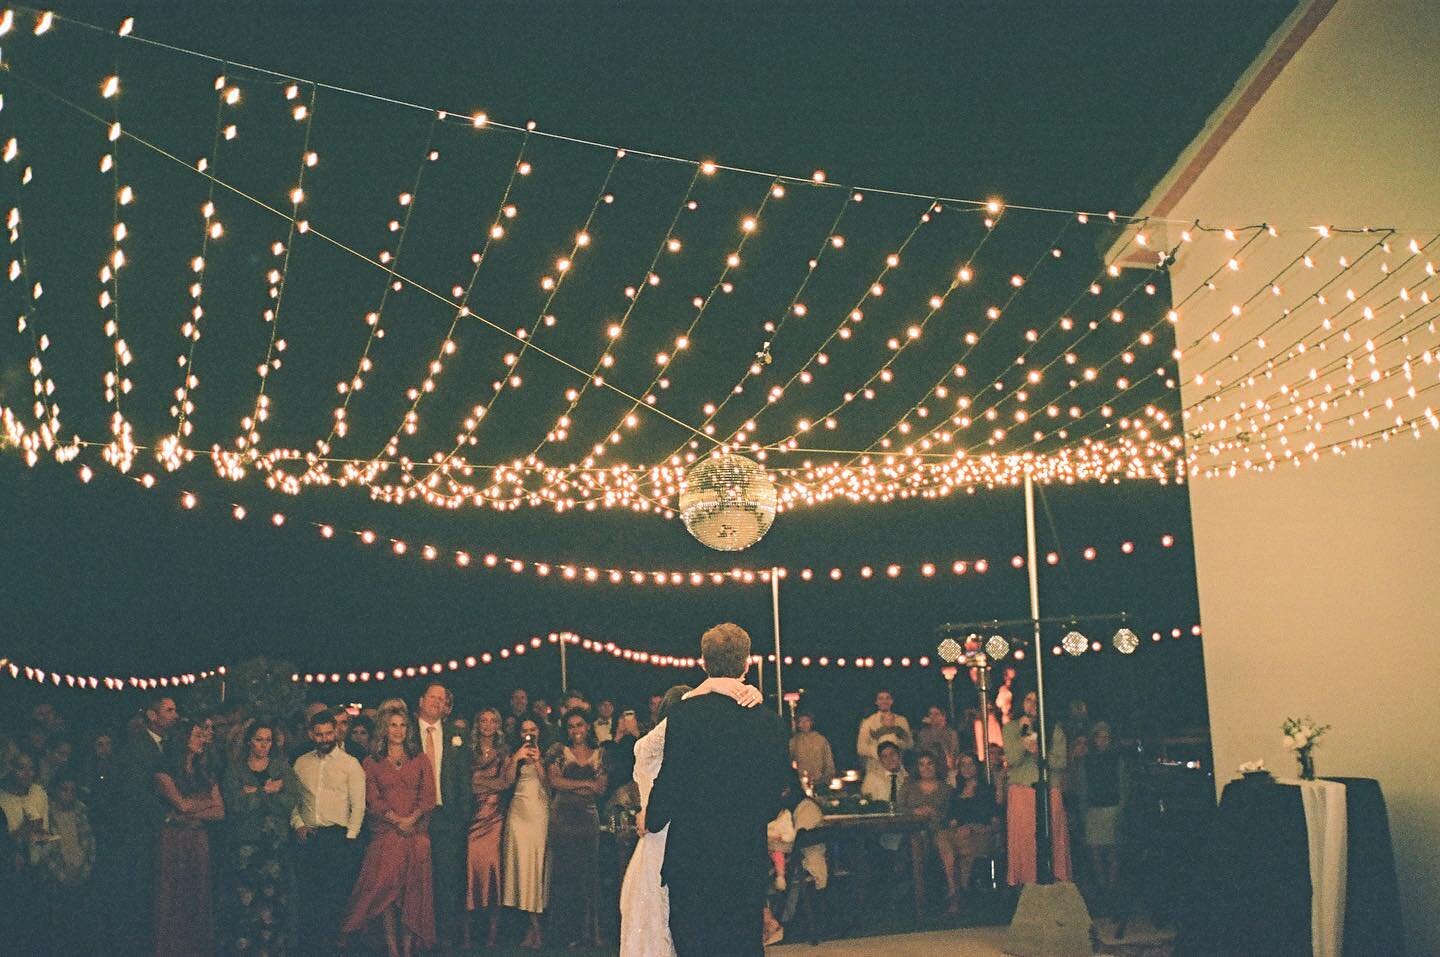 ✨ Twinkle Lights &amp; Disco Ball 🪩
The perfect combo for a perfect dancefloor!
📸 @capturedbyhaylie 
.
.
.
.
.

#varsityevents #arizonaweddings #azwedding #azweddings #phoenixwedding #weddingphotography #phoenixweddings #weddinginspiration #arizona